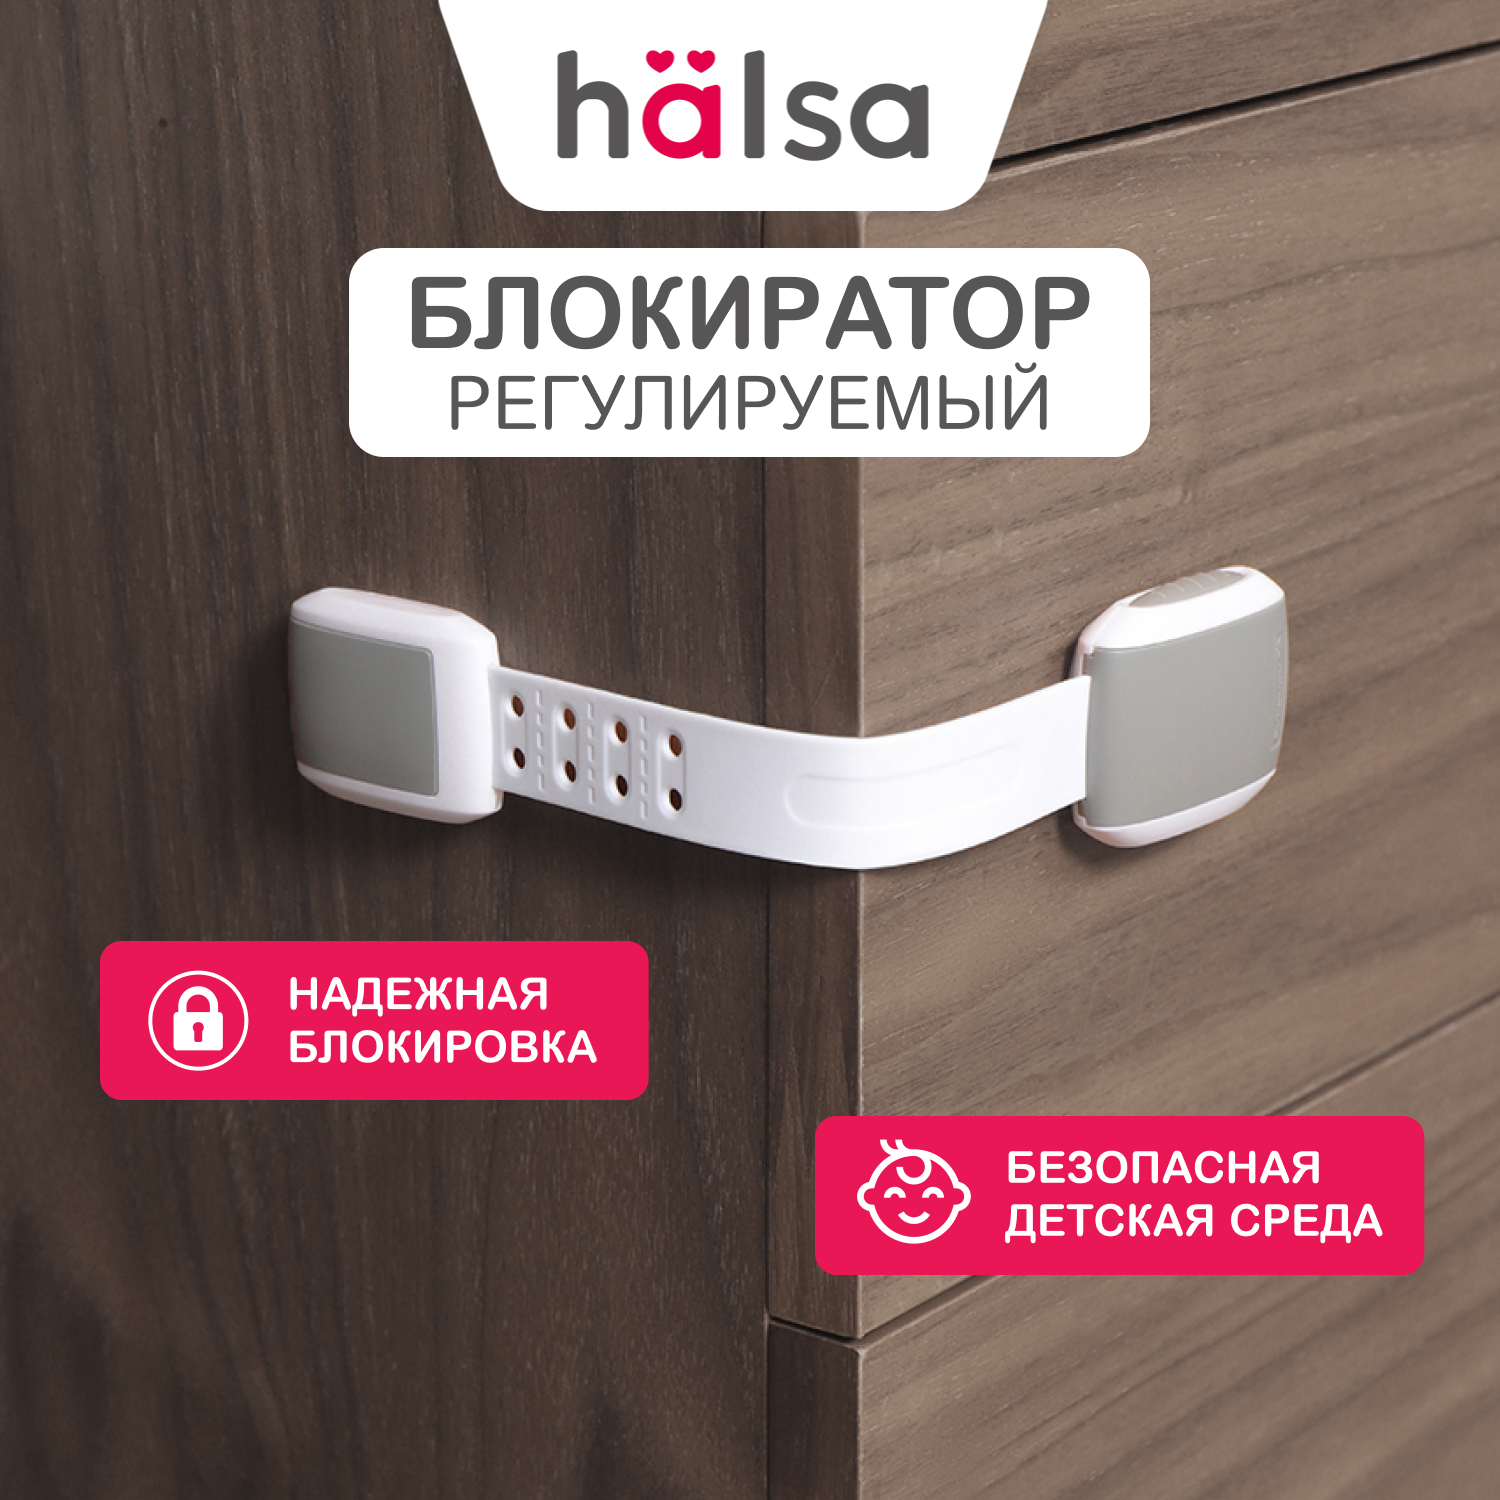 Универсальный блокиратор HALSA цвет: серый 1 шт HLS-S-205G блокиратор на дверцы 2 шт